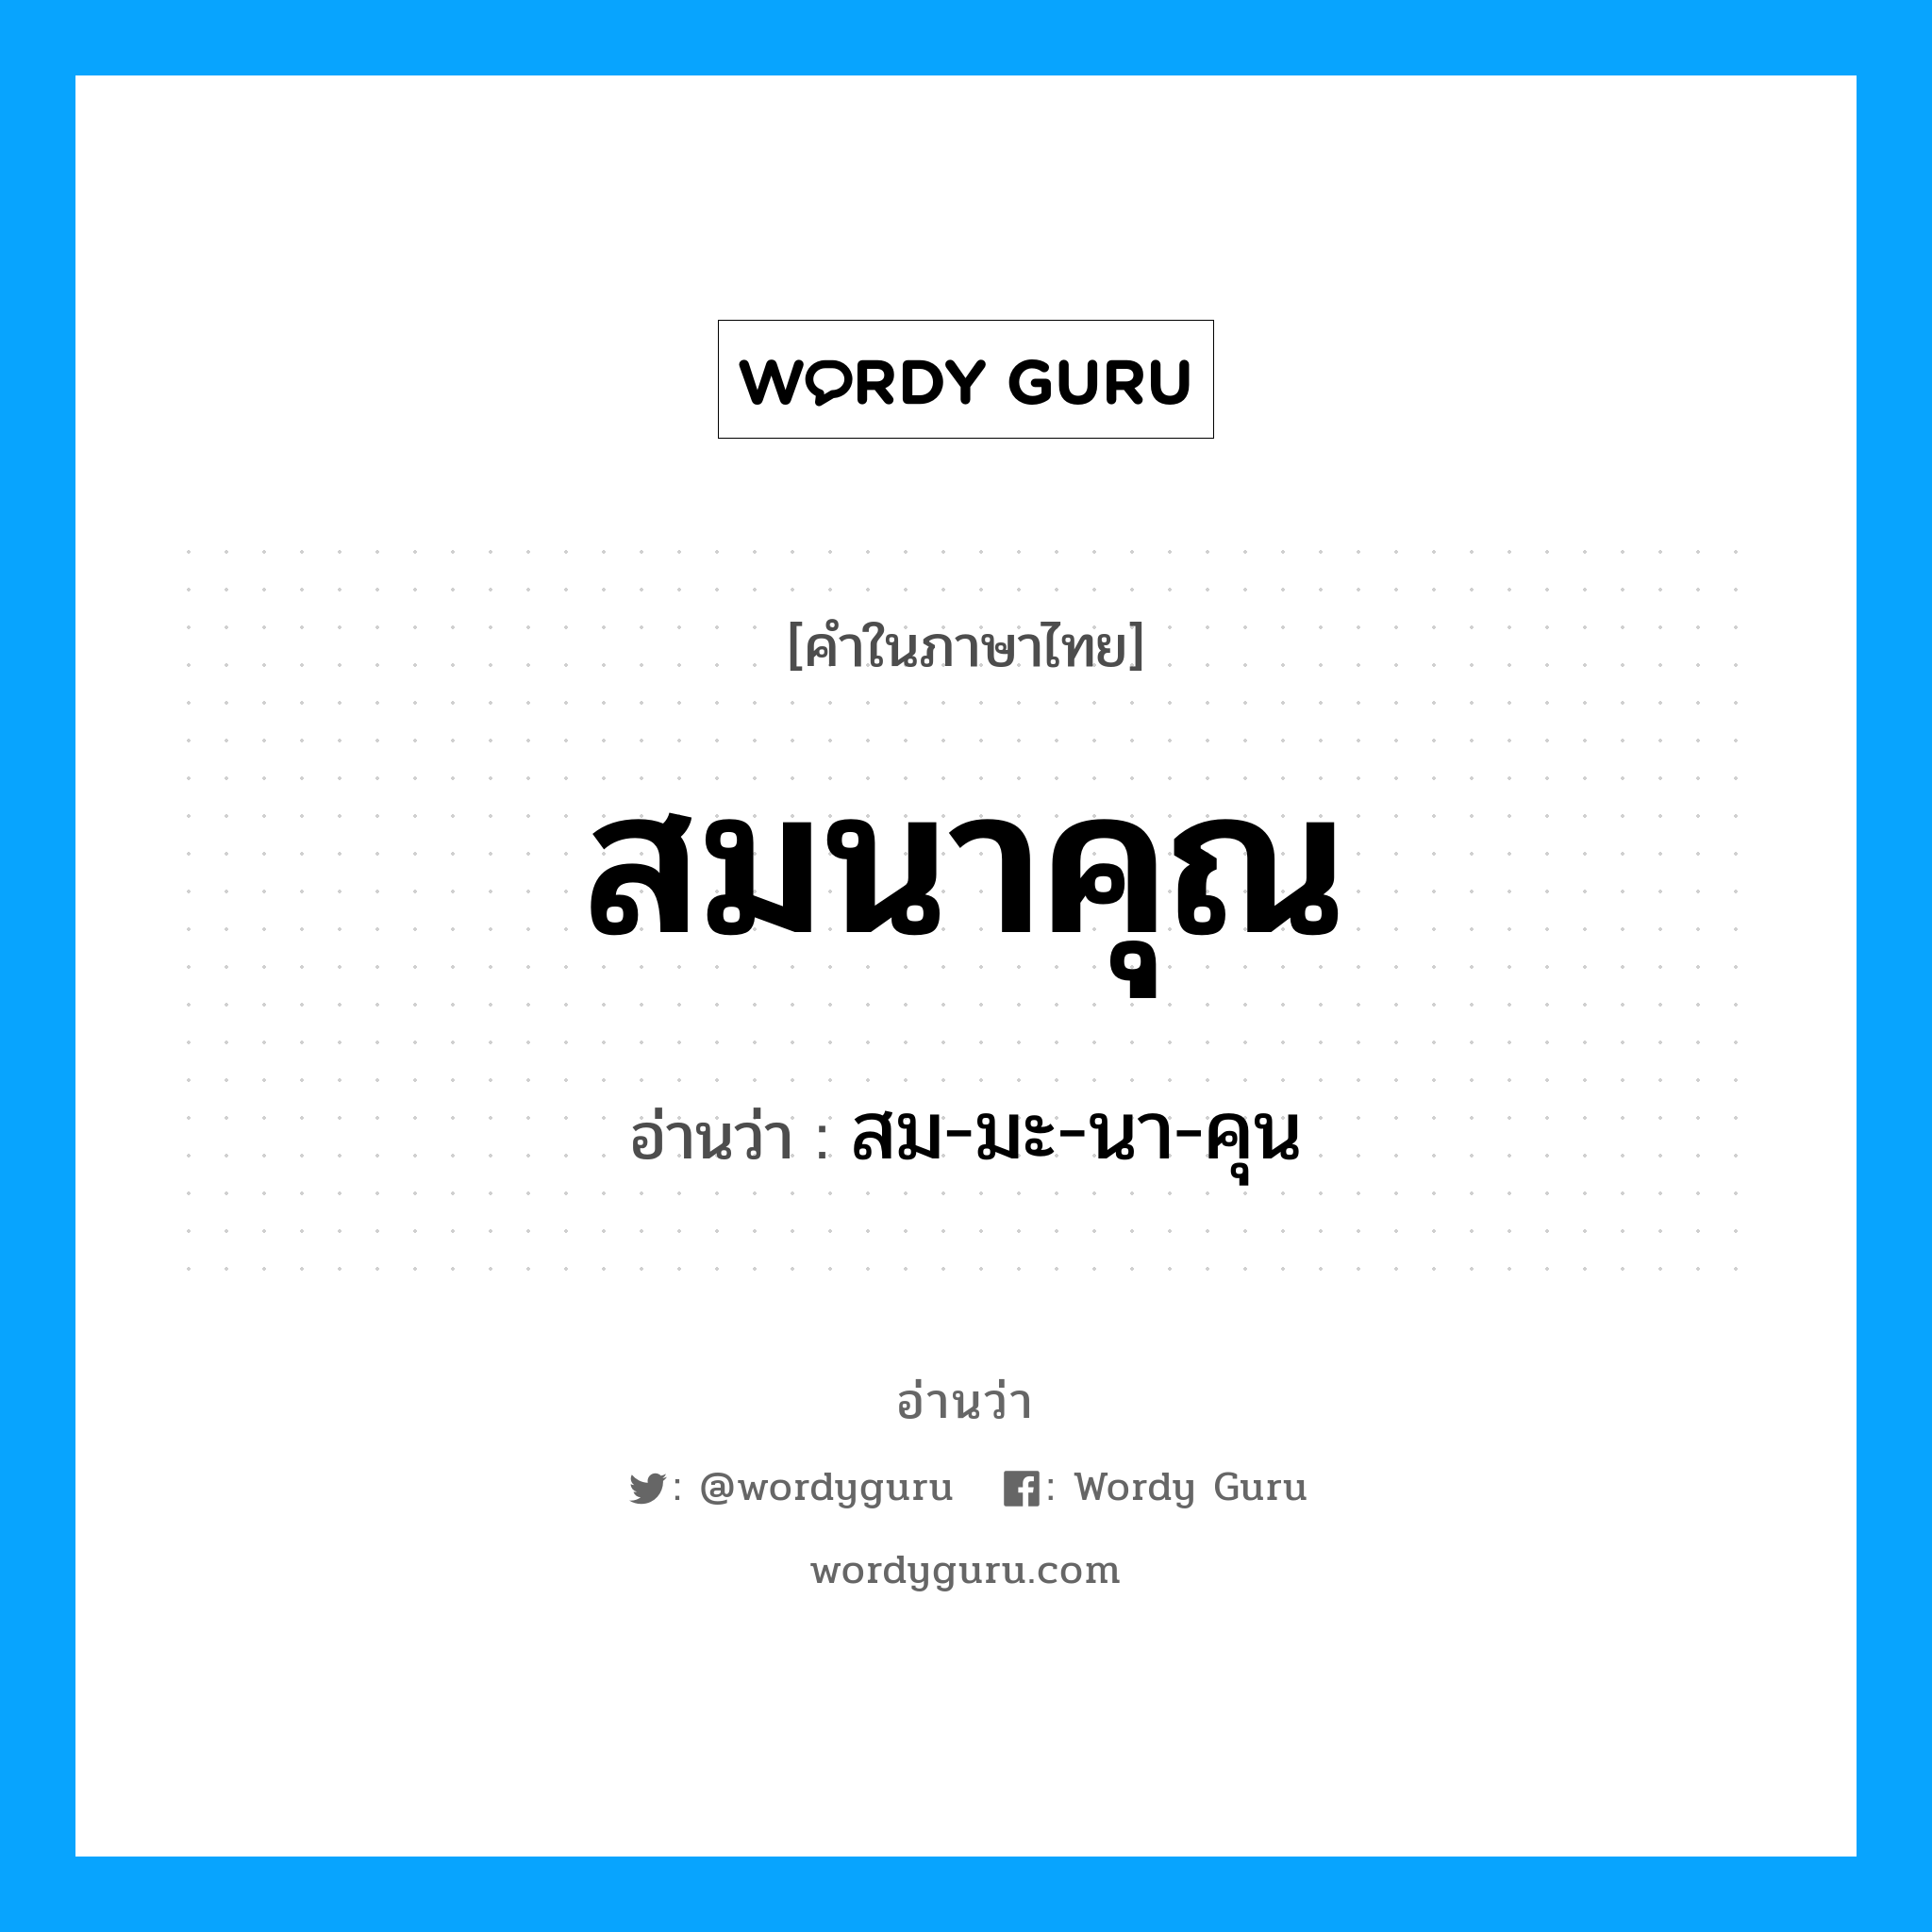 สมนาคุณ อ่านว่า?, คำในภาษาไทย สมนาคุณ อ่านว่า สม-มะ-นา-คุน